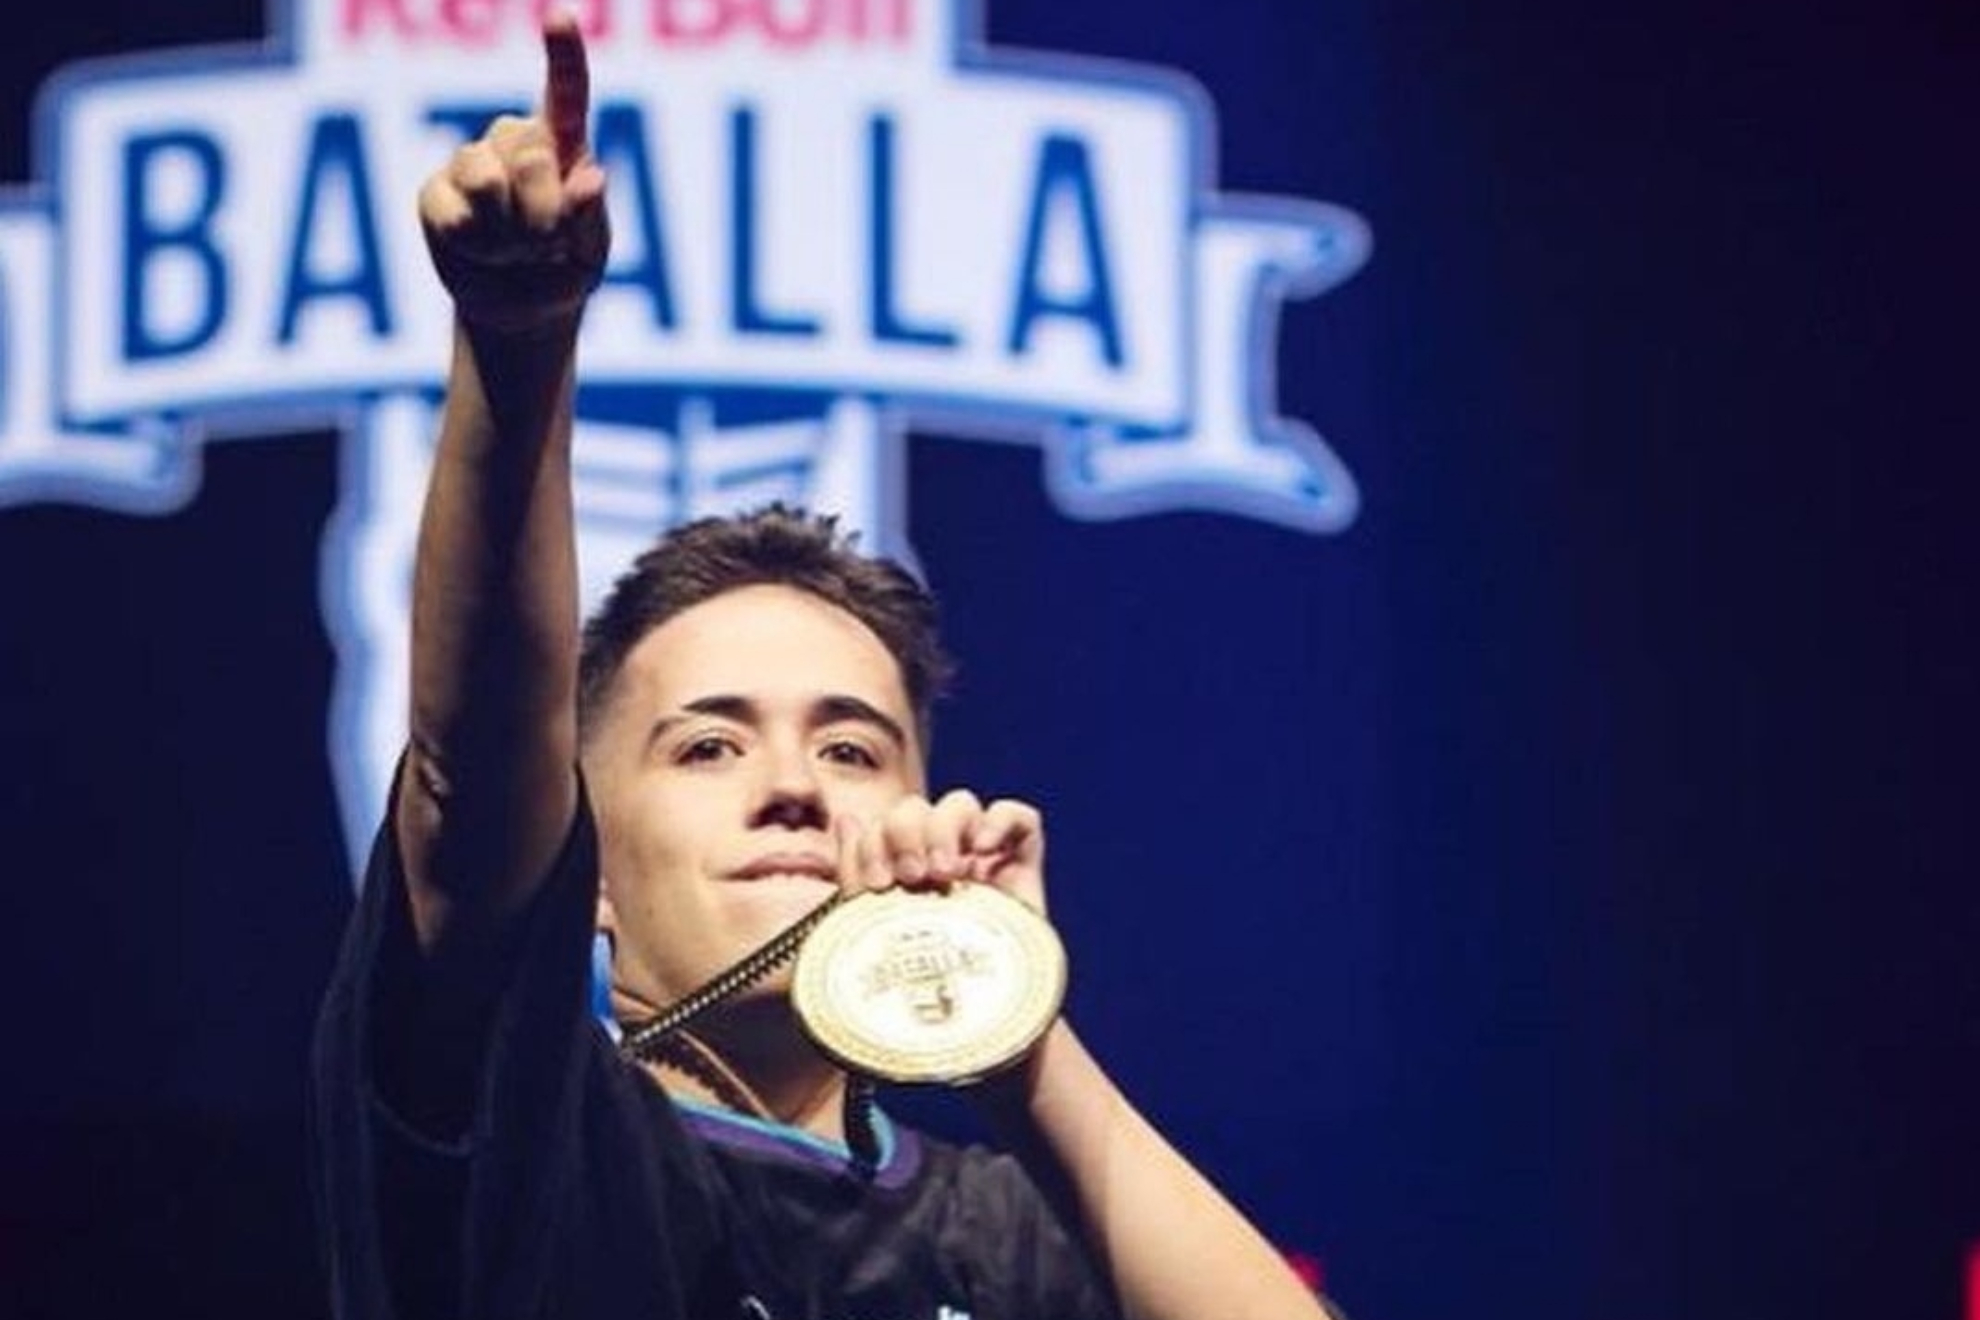 Gazir con medalla: Gazir en Red Bull Batalla